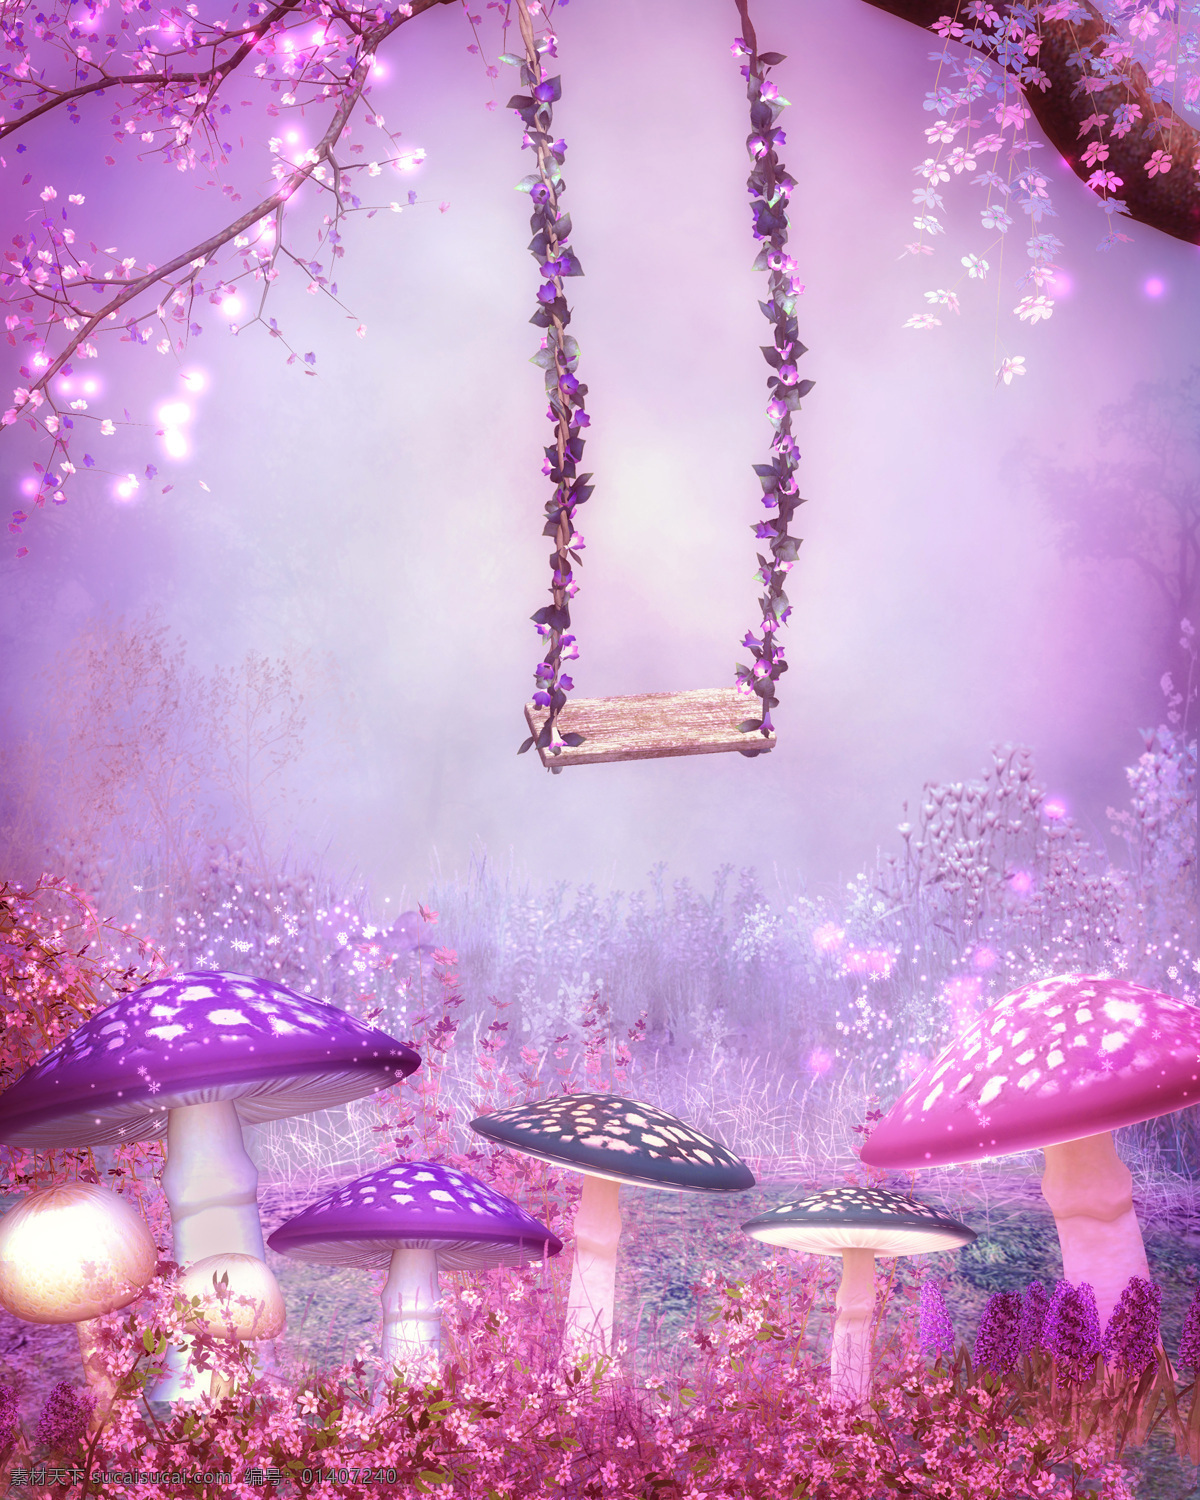 紫色 唯美 蘑菇 秋千 背景 紫色唯美 动画场景 梦幻 树木 背景制作 动漫动画 风景漫画